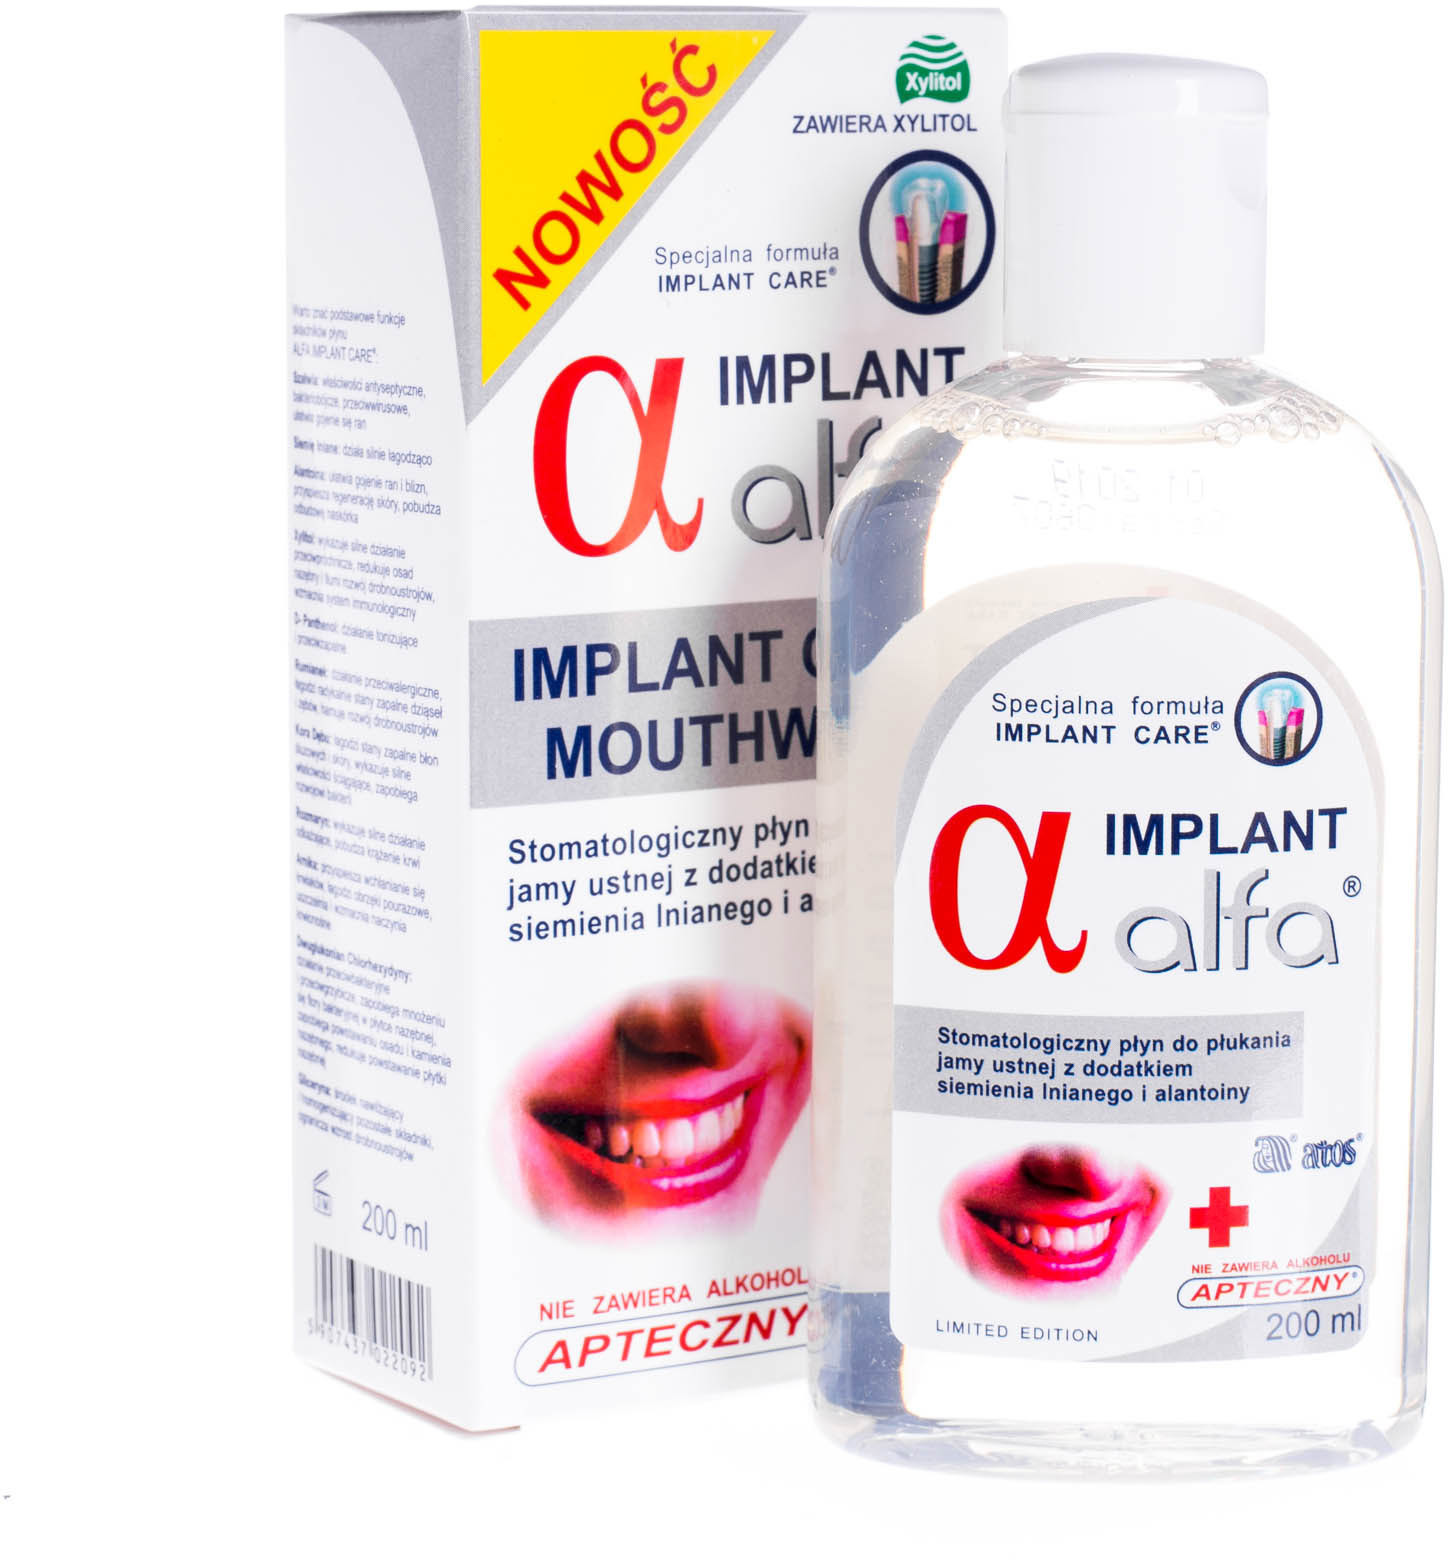 Alfa Implant Stomatologiczny płyn do płukania jamy ustnej dla osób po zabiegach implantologicznych